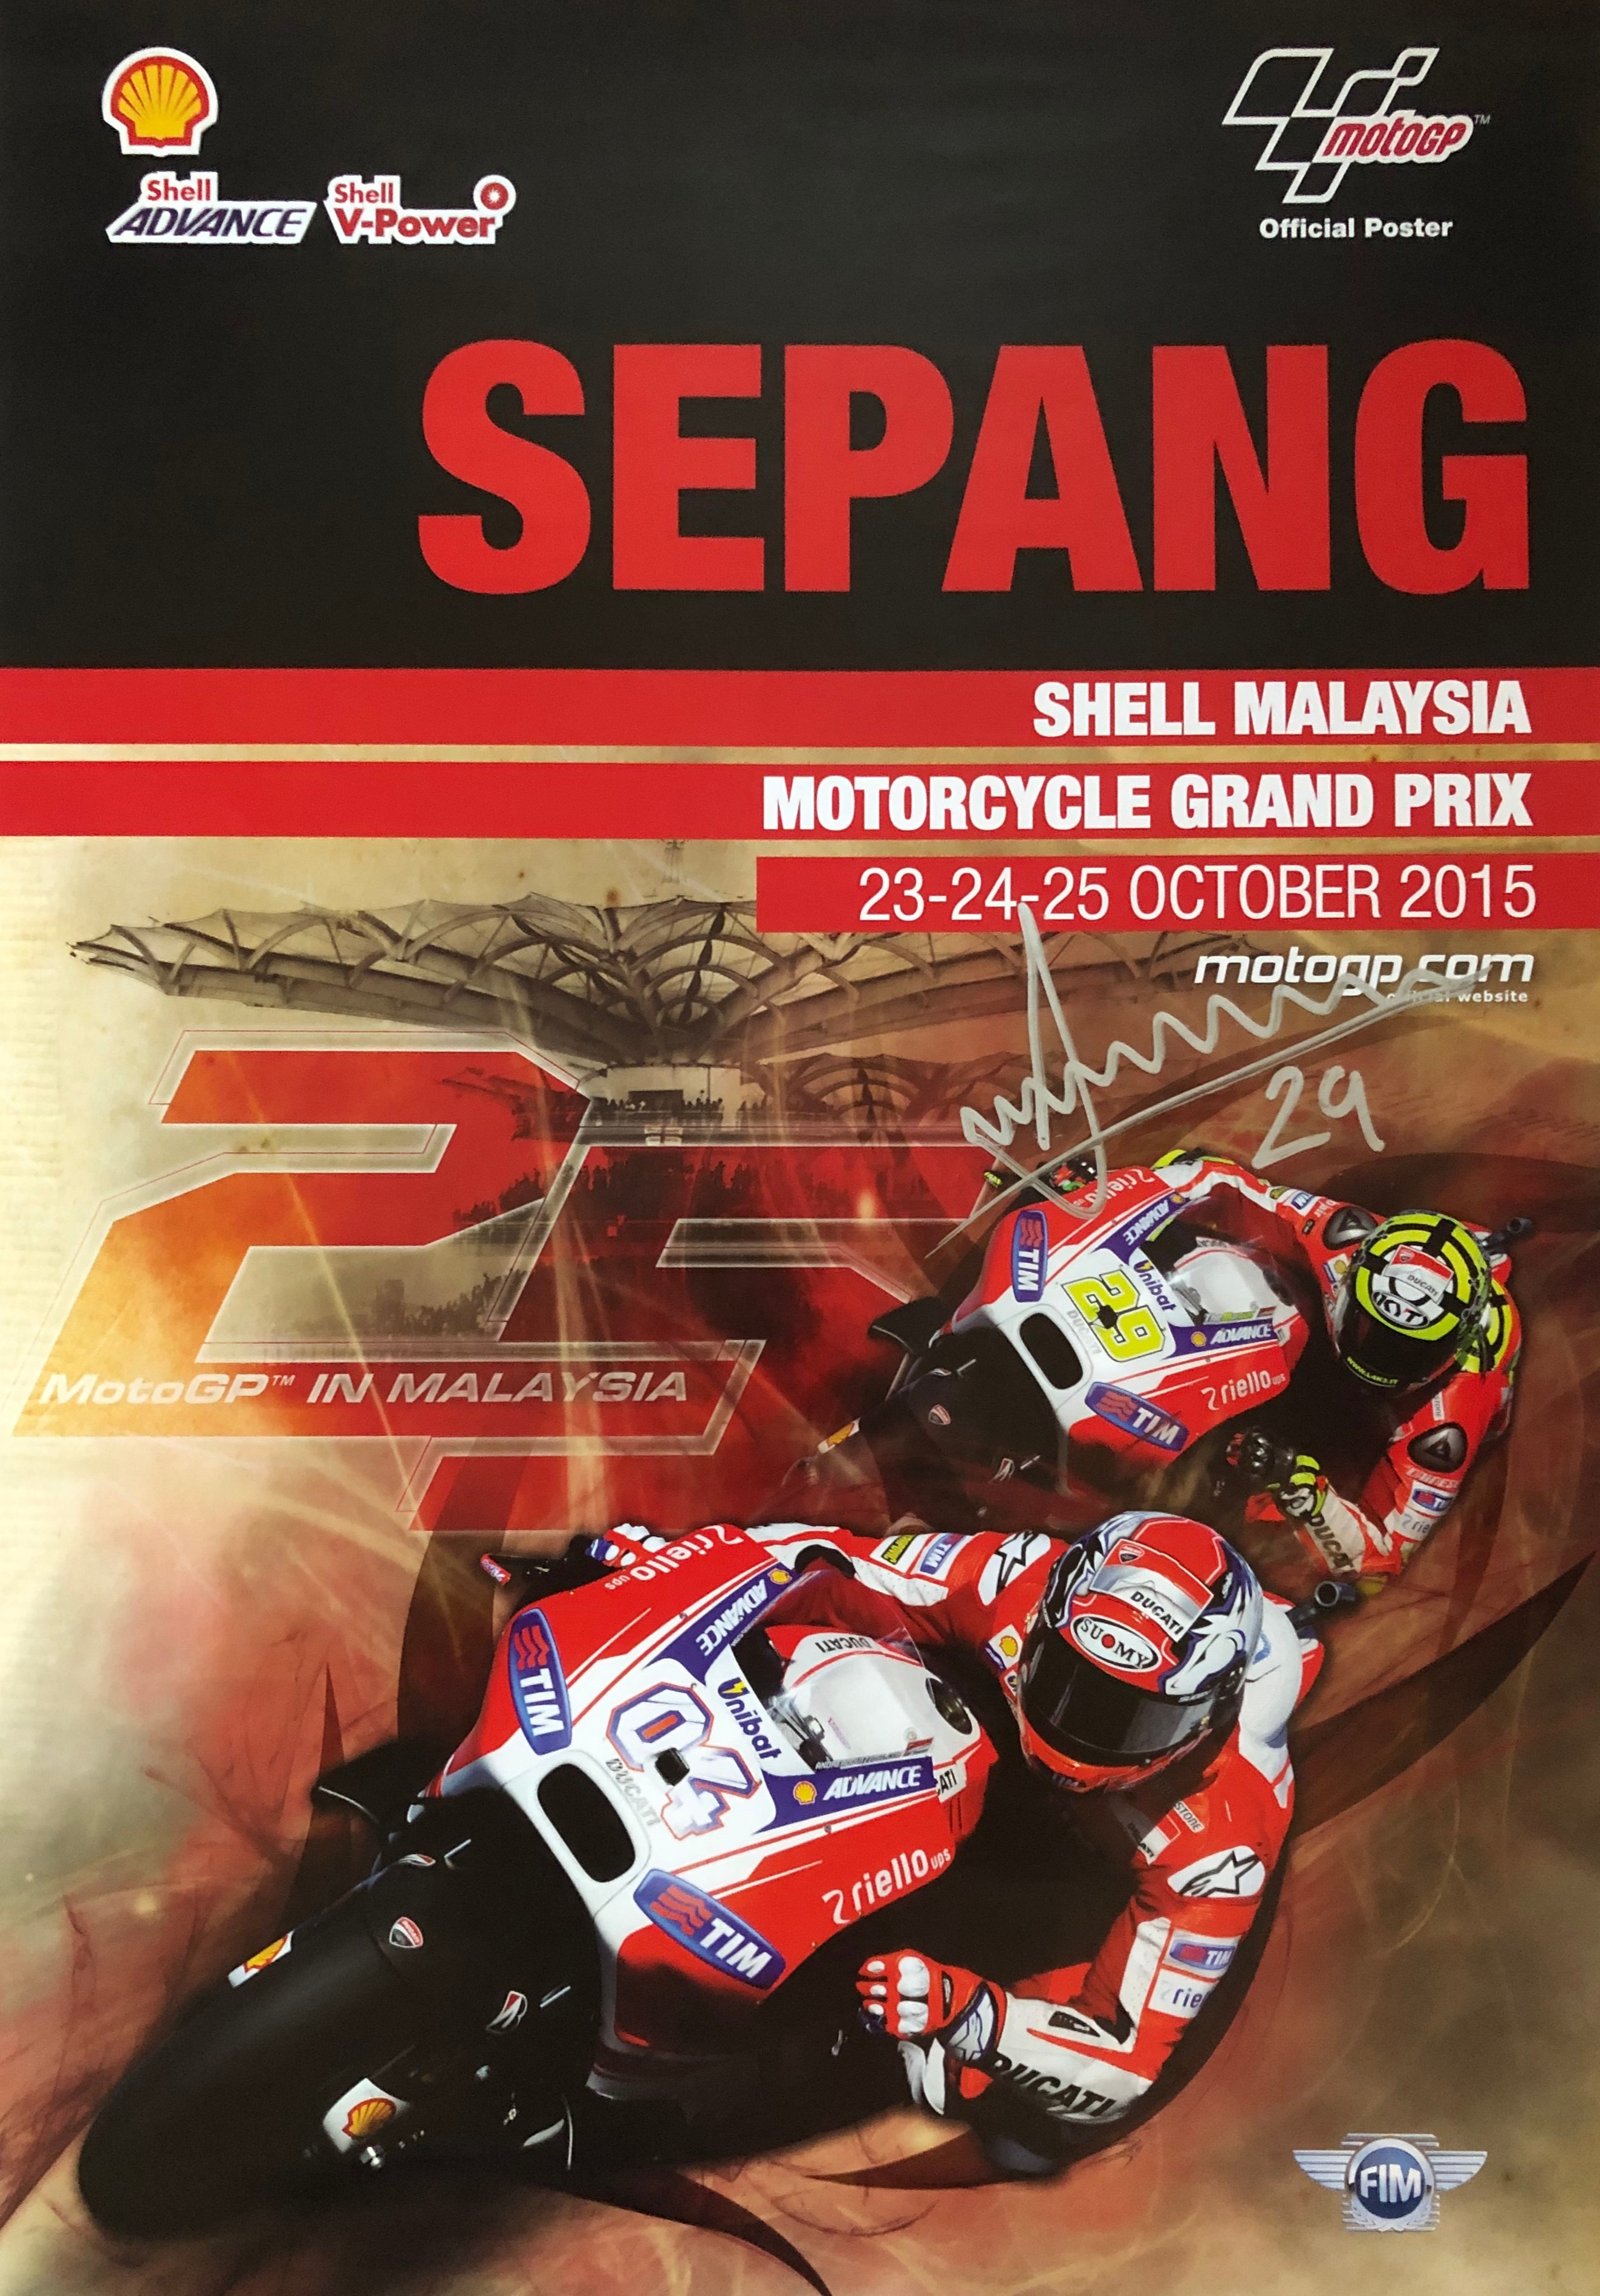 โปสเตอร์ MotoGP Andrea Iannone ลงนามโปสเตอร์ทางการ MotoGP Malaysia 2015